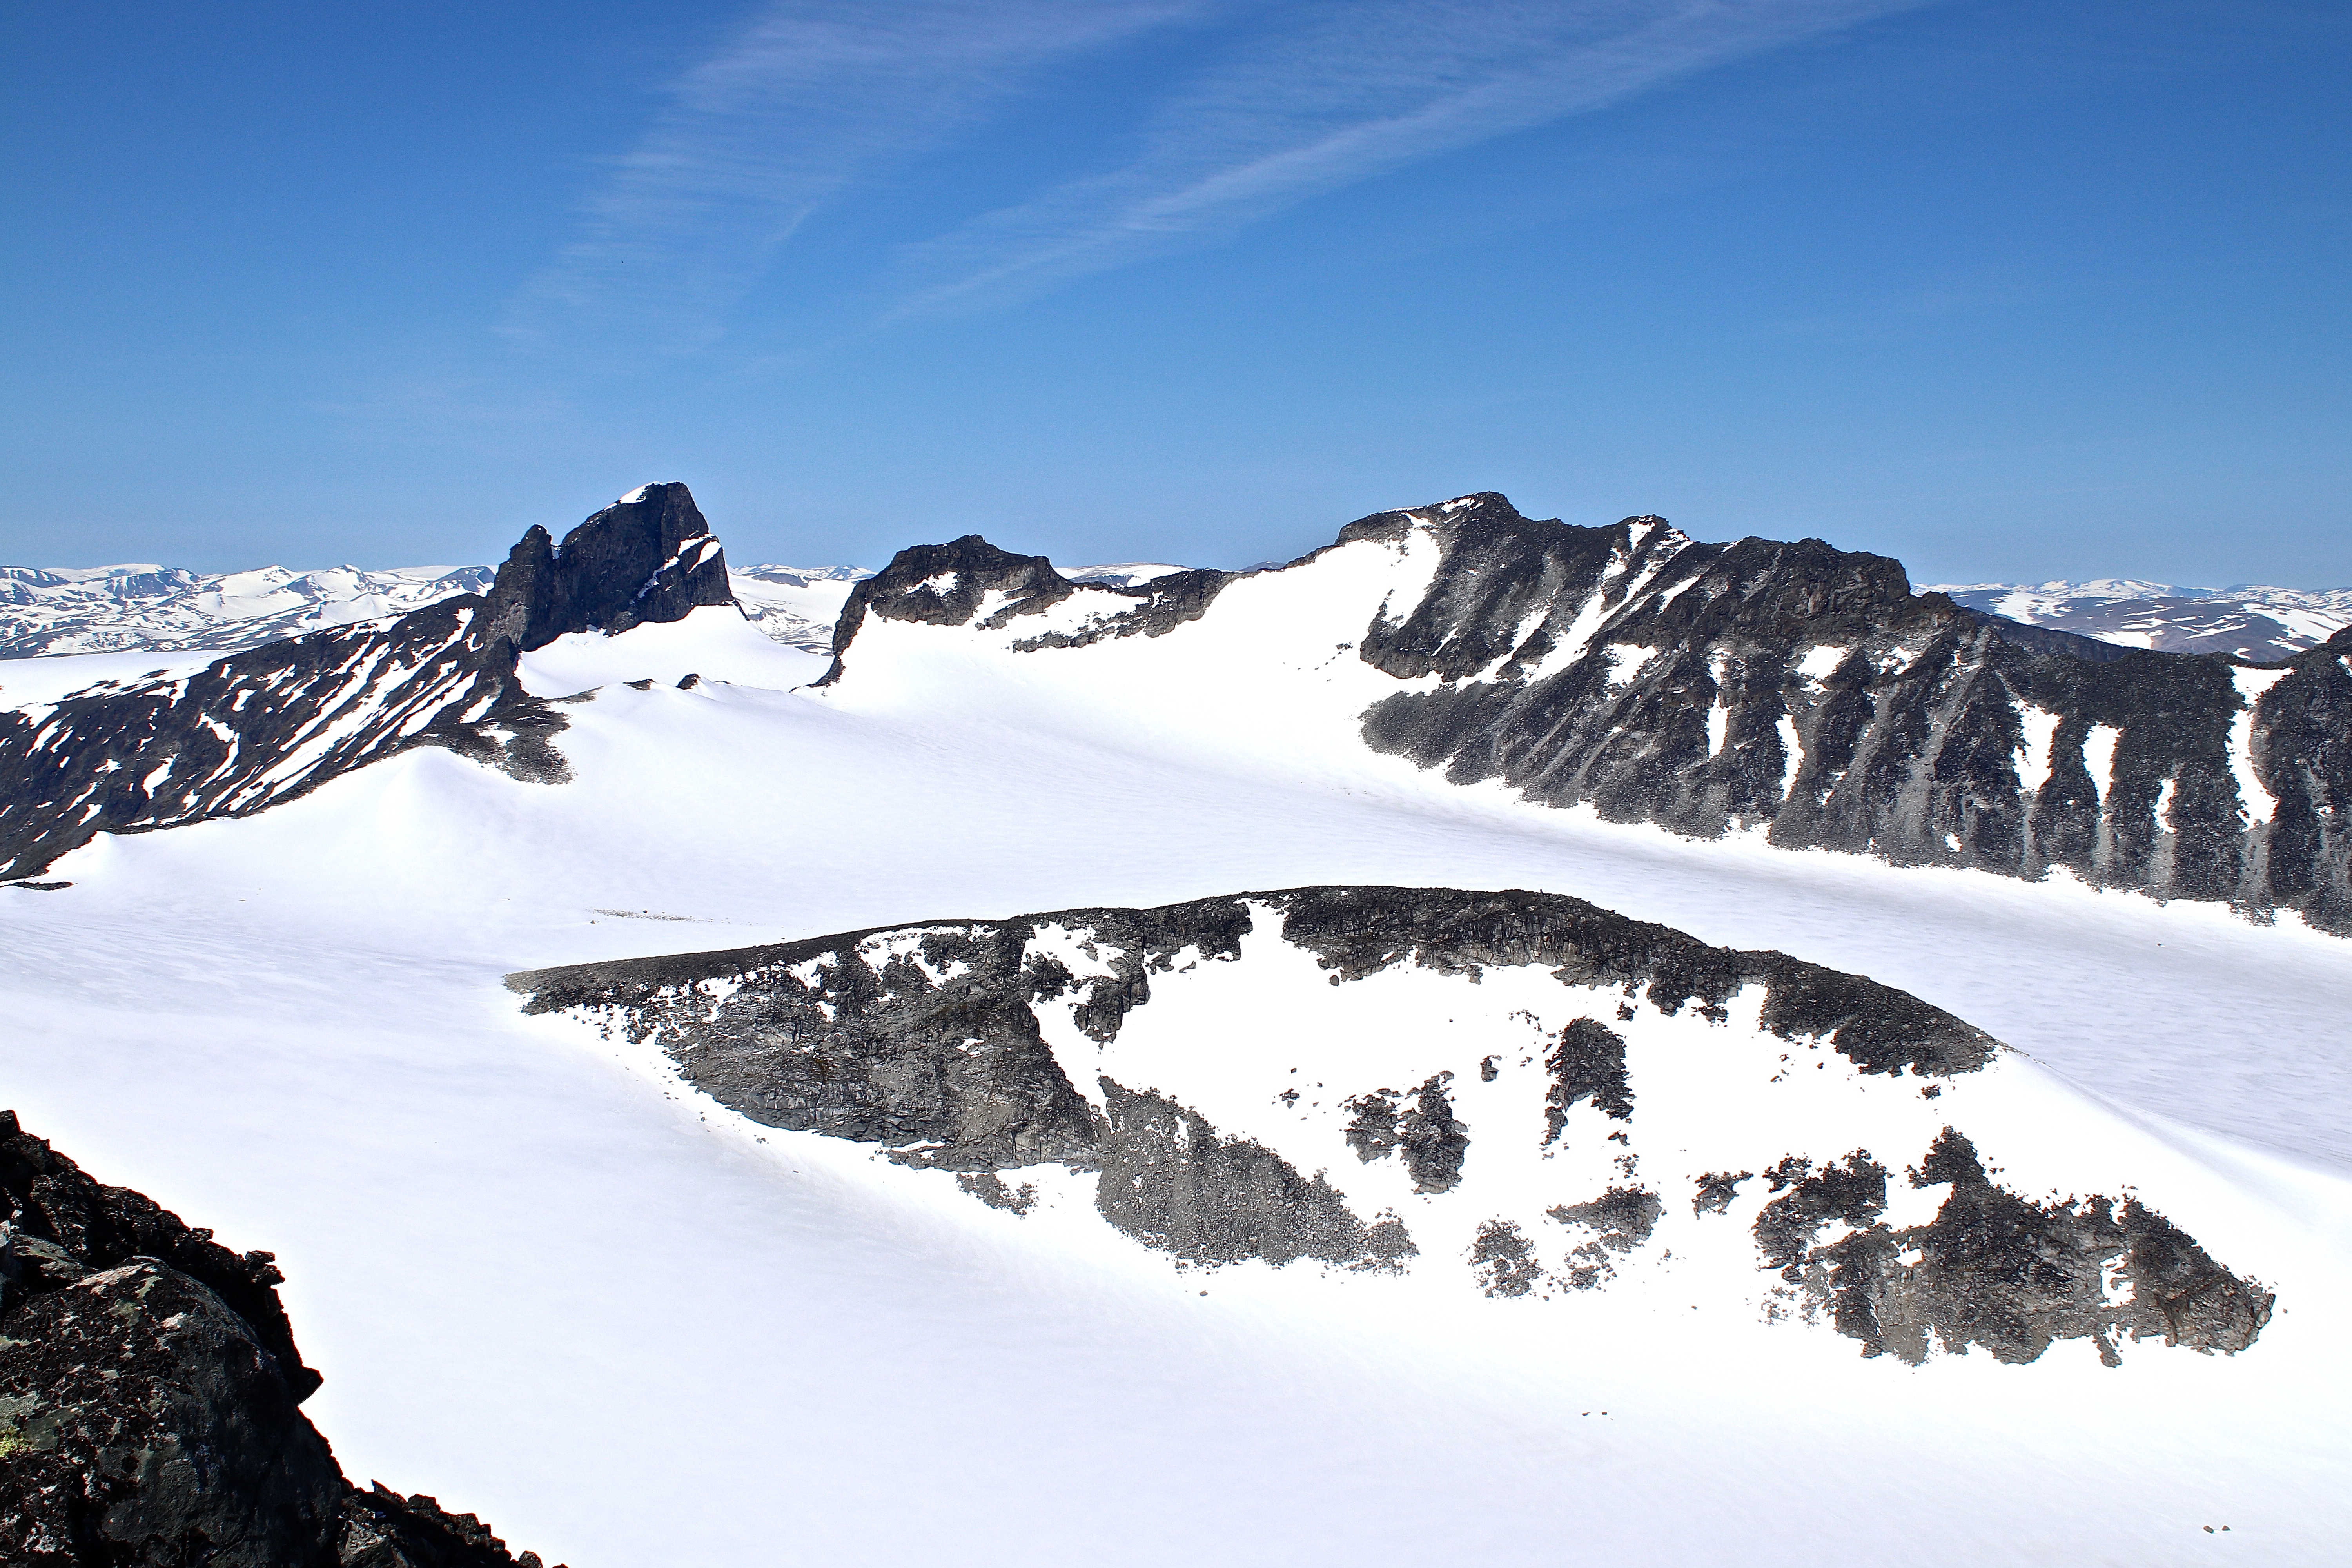 Svellnosbrean sett fra Tverråtindan (3.002 moh). Svellnosbreahestan i midten, toppene Skardstinden, Ymmelstinden, Storjuvtinden og Galdhøpiggen bak.